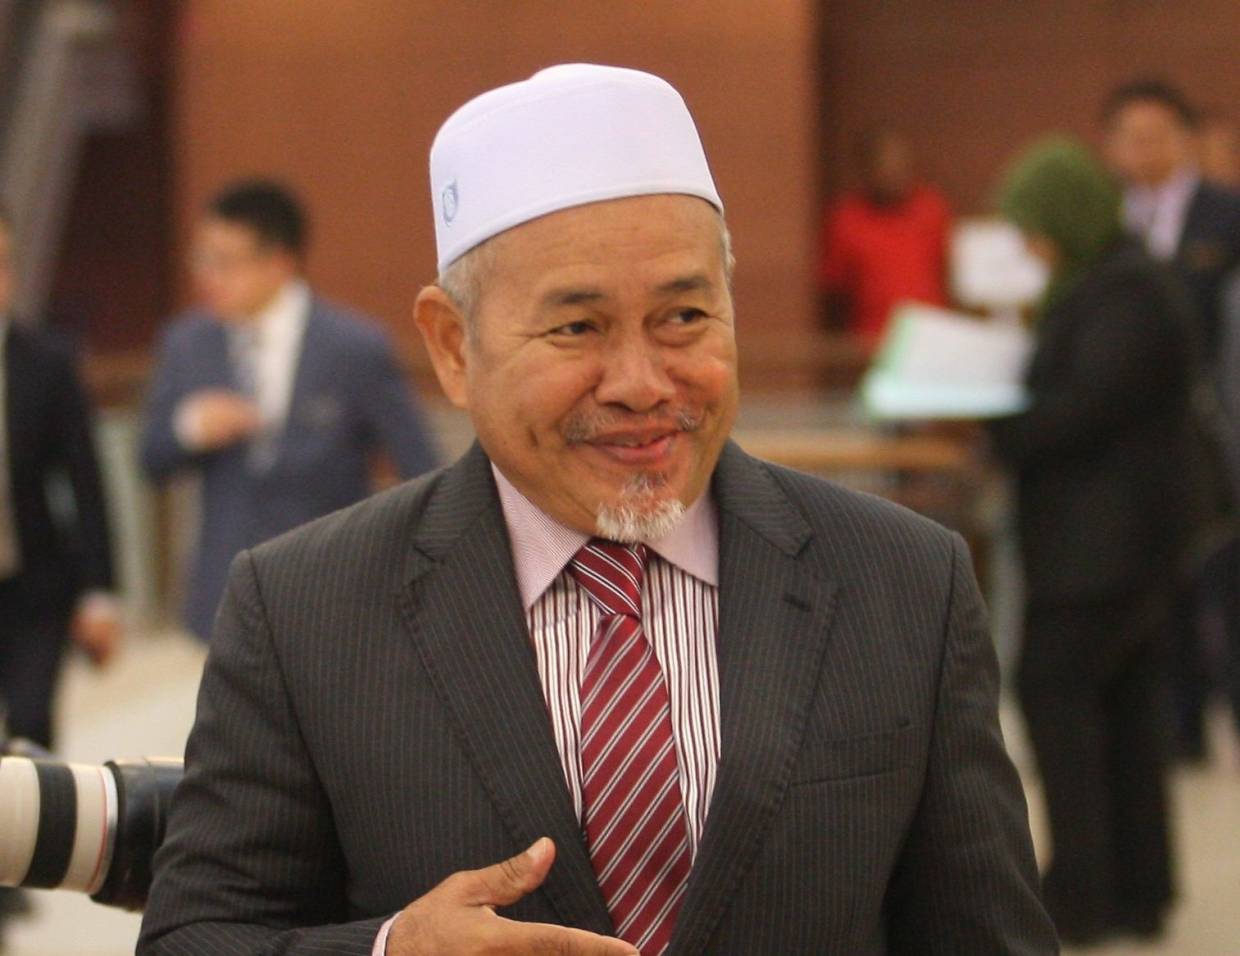 PAS sokong Ismail Sabri sebagai PM baharu